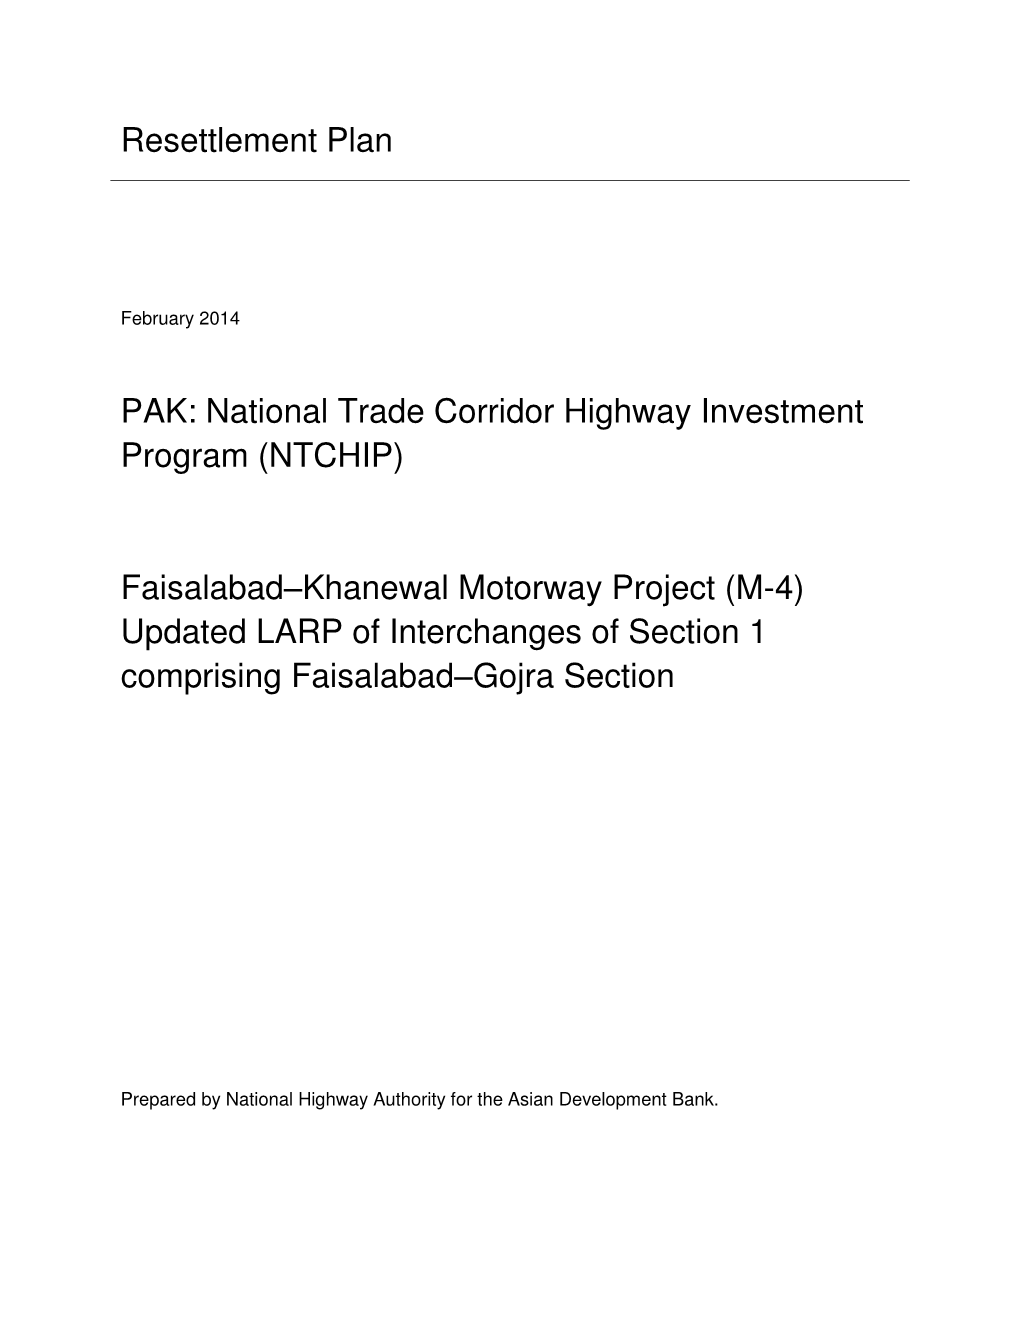 40075-023: National Trade Corridor